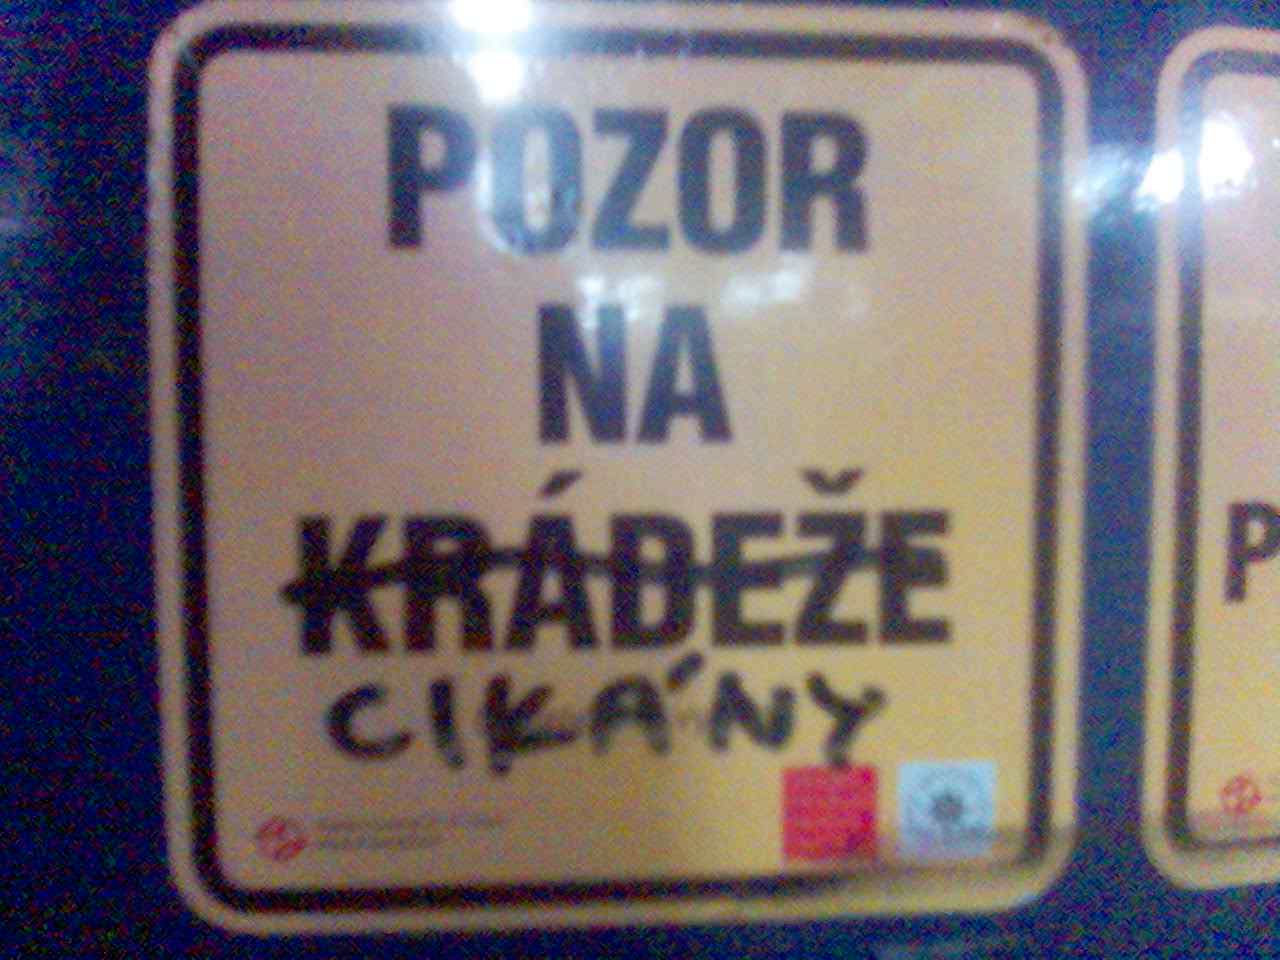 Obrázek upozorneni z prazske tramvaje